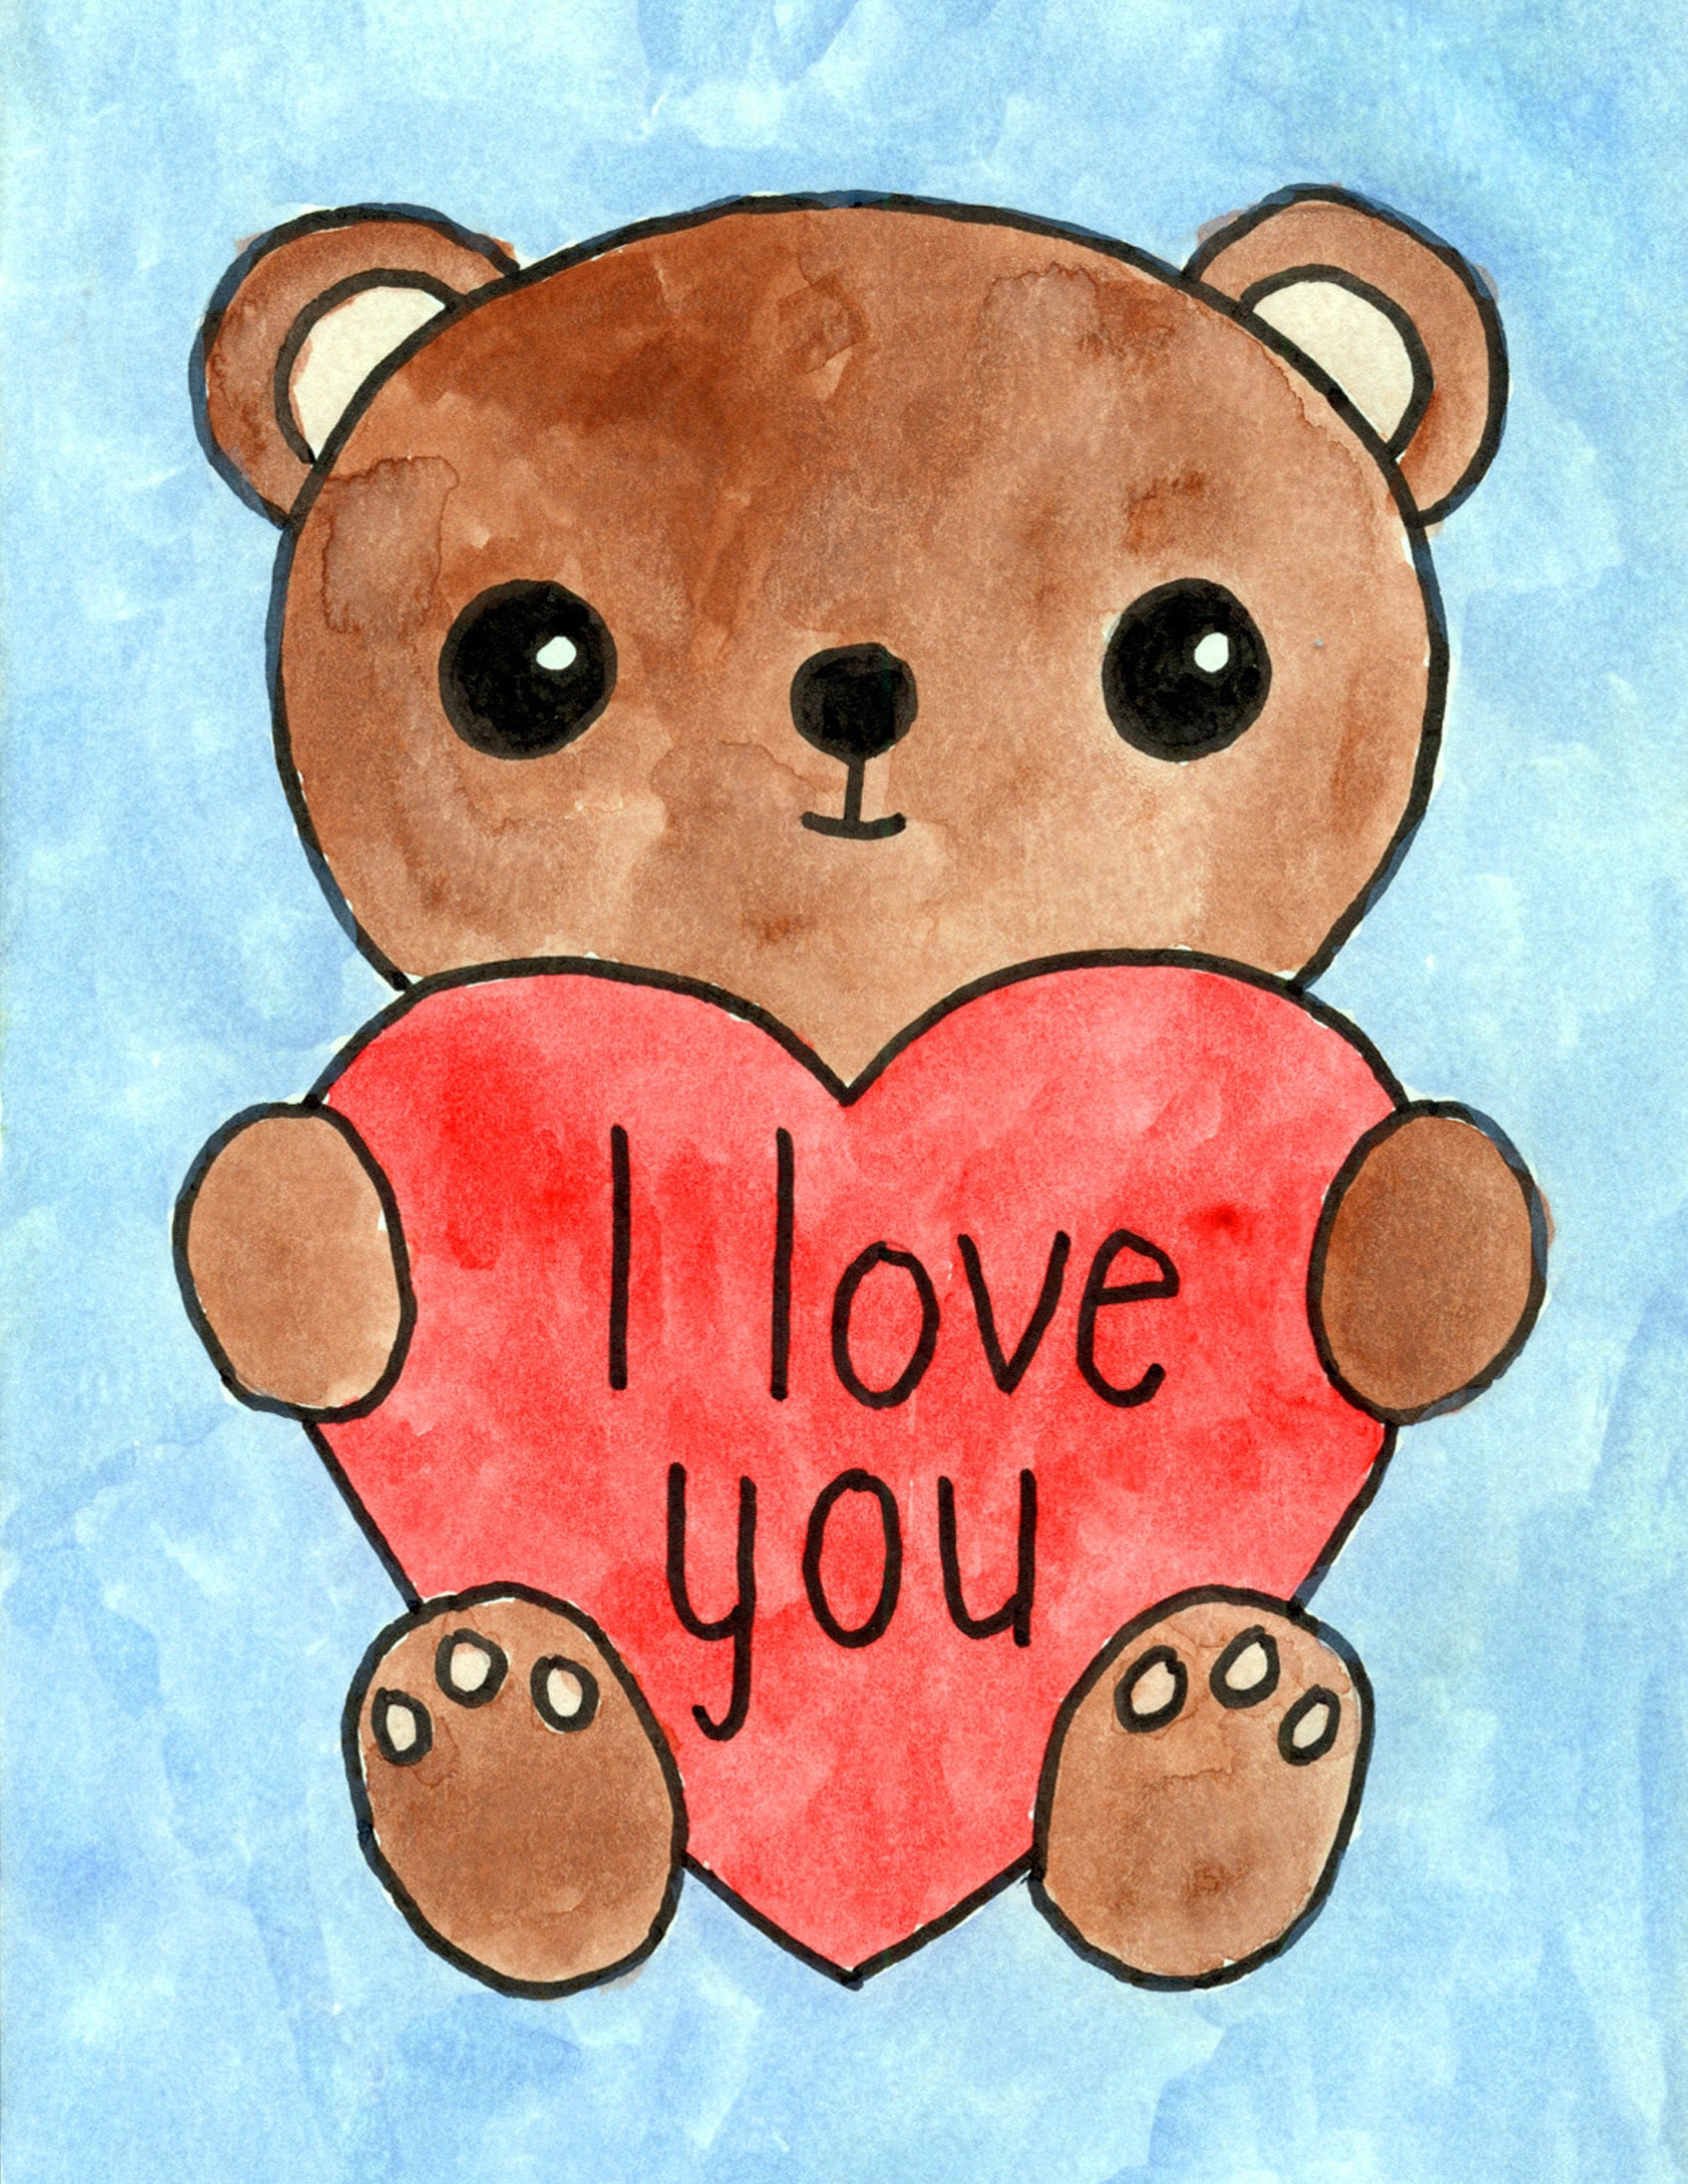 Cute Teddy Bear Drawing Amazing